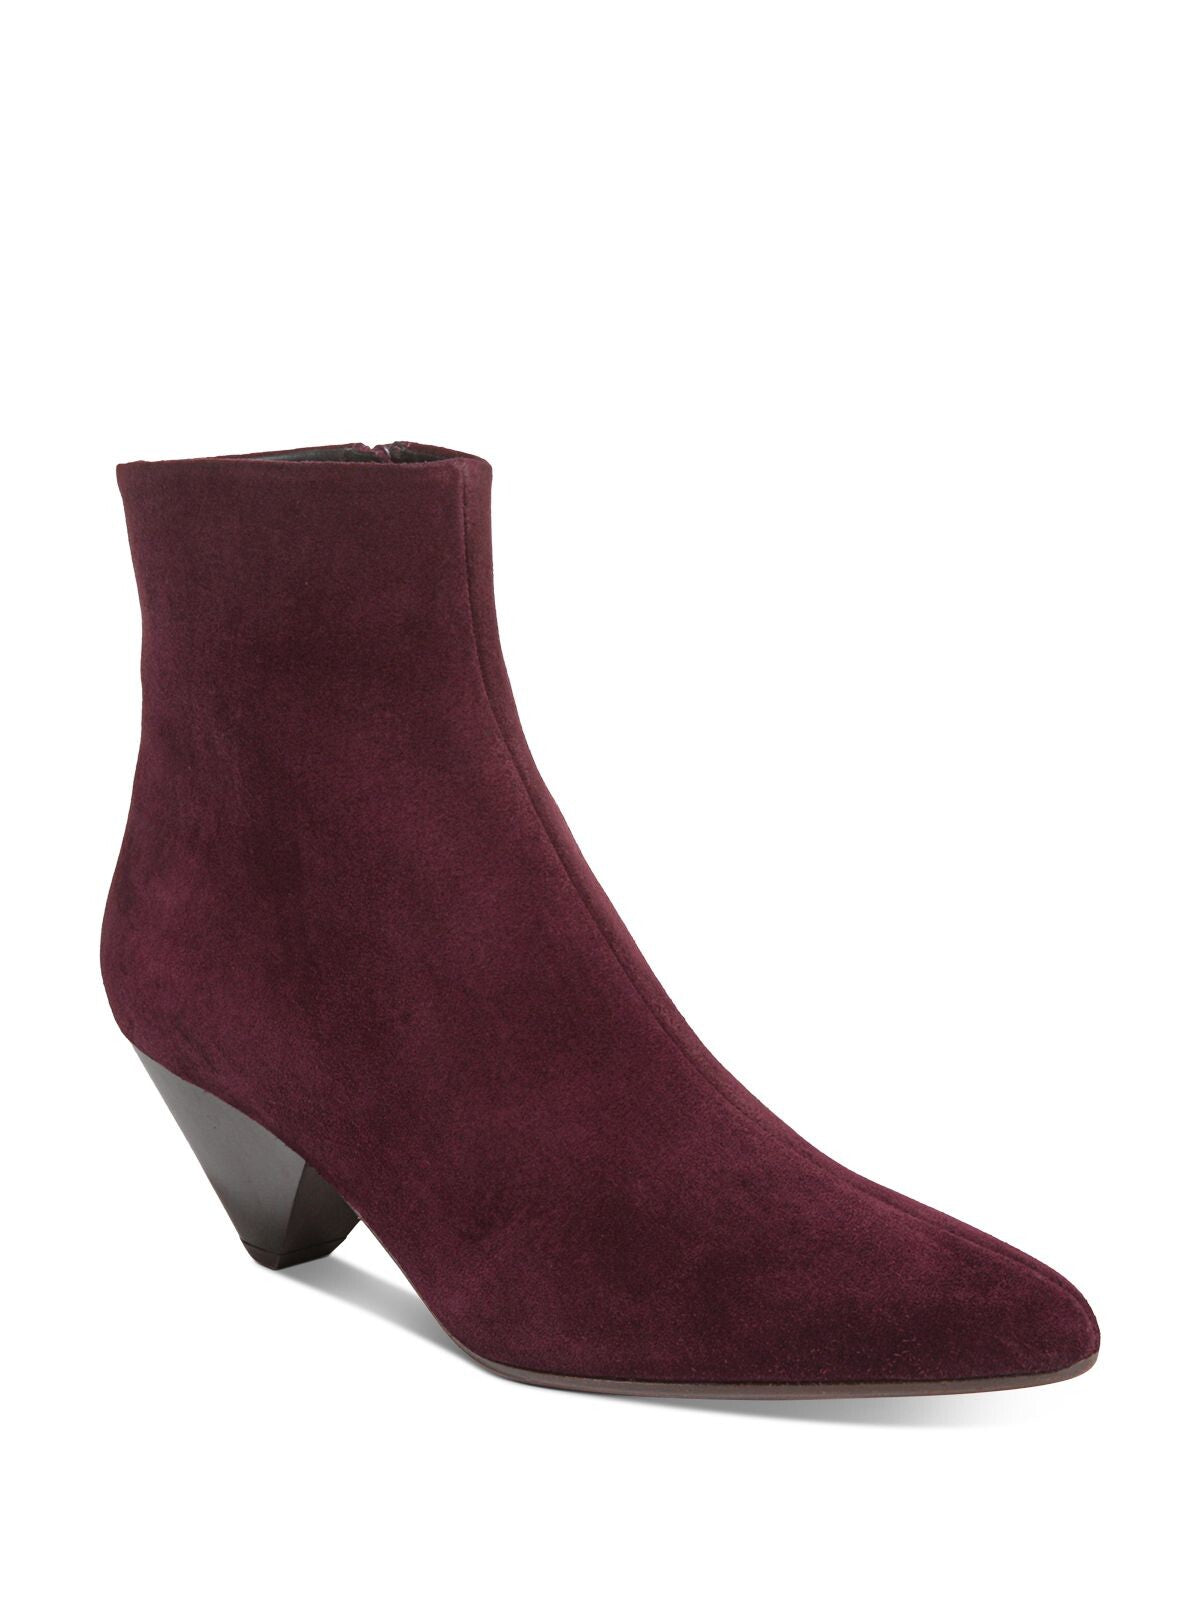 VINCE. Womens Burgundy Comfort Alder Almond Toe Cone Heel Zip-Up Leather Booties 7 M